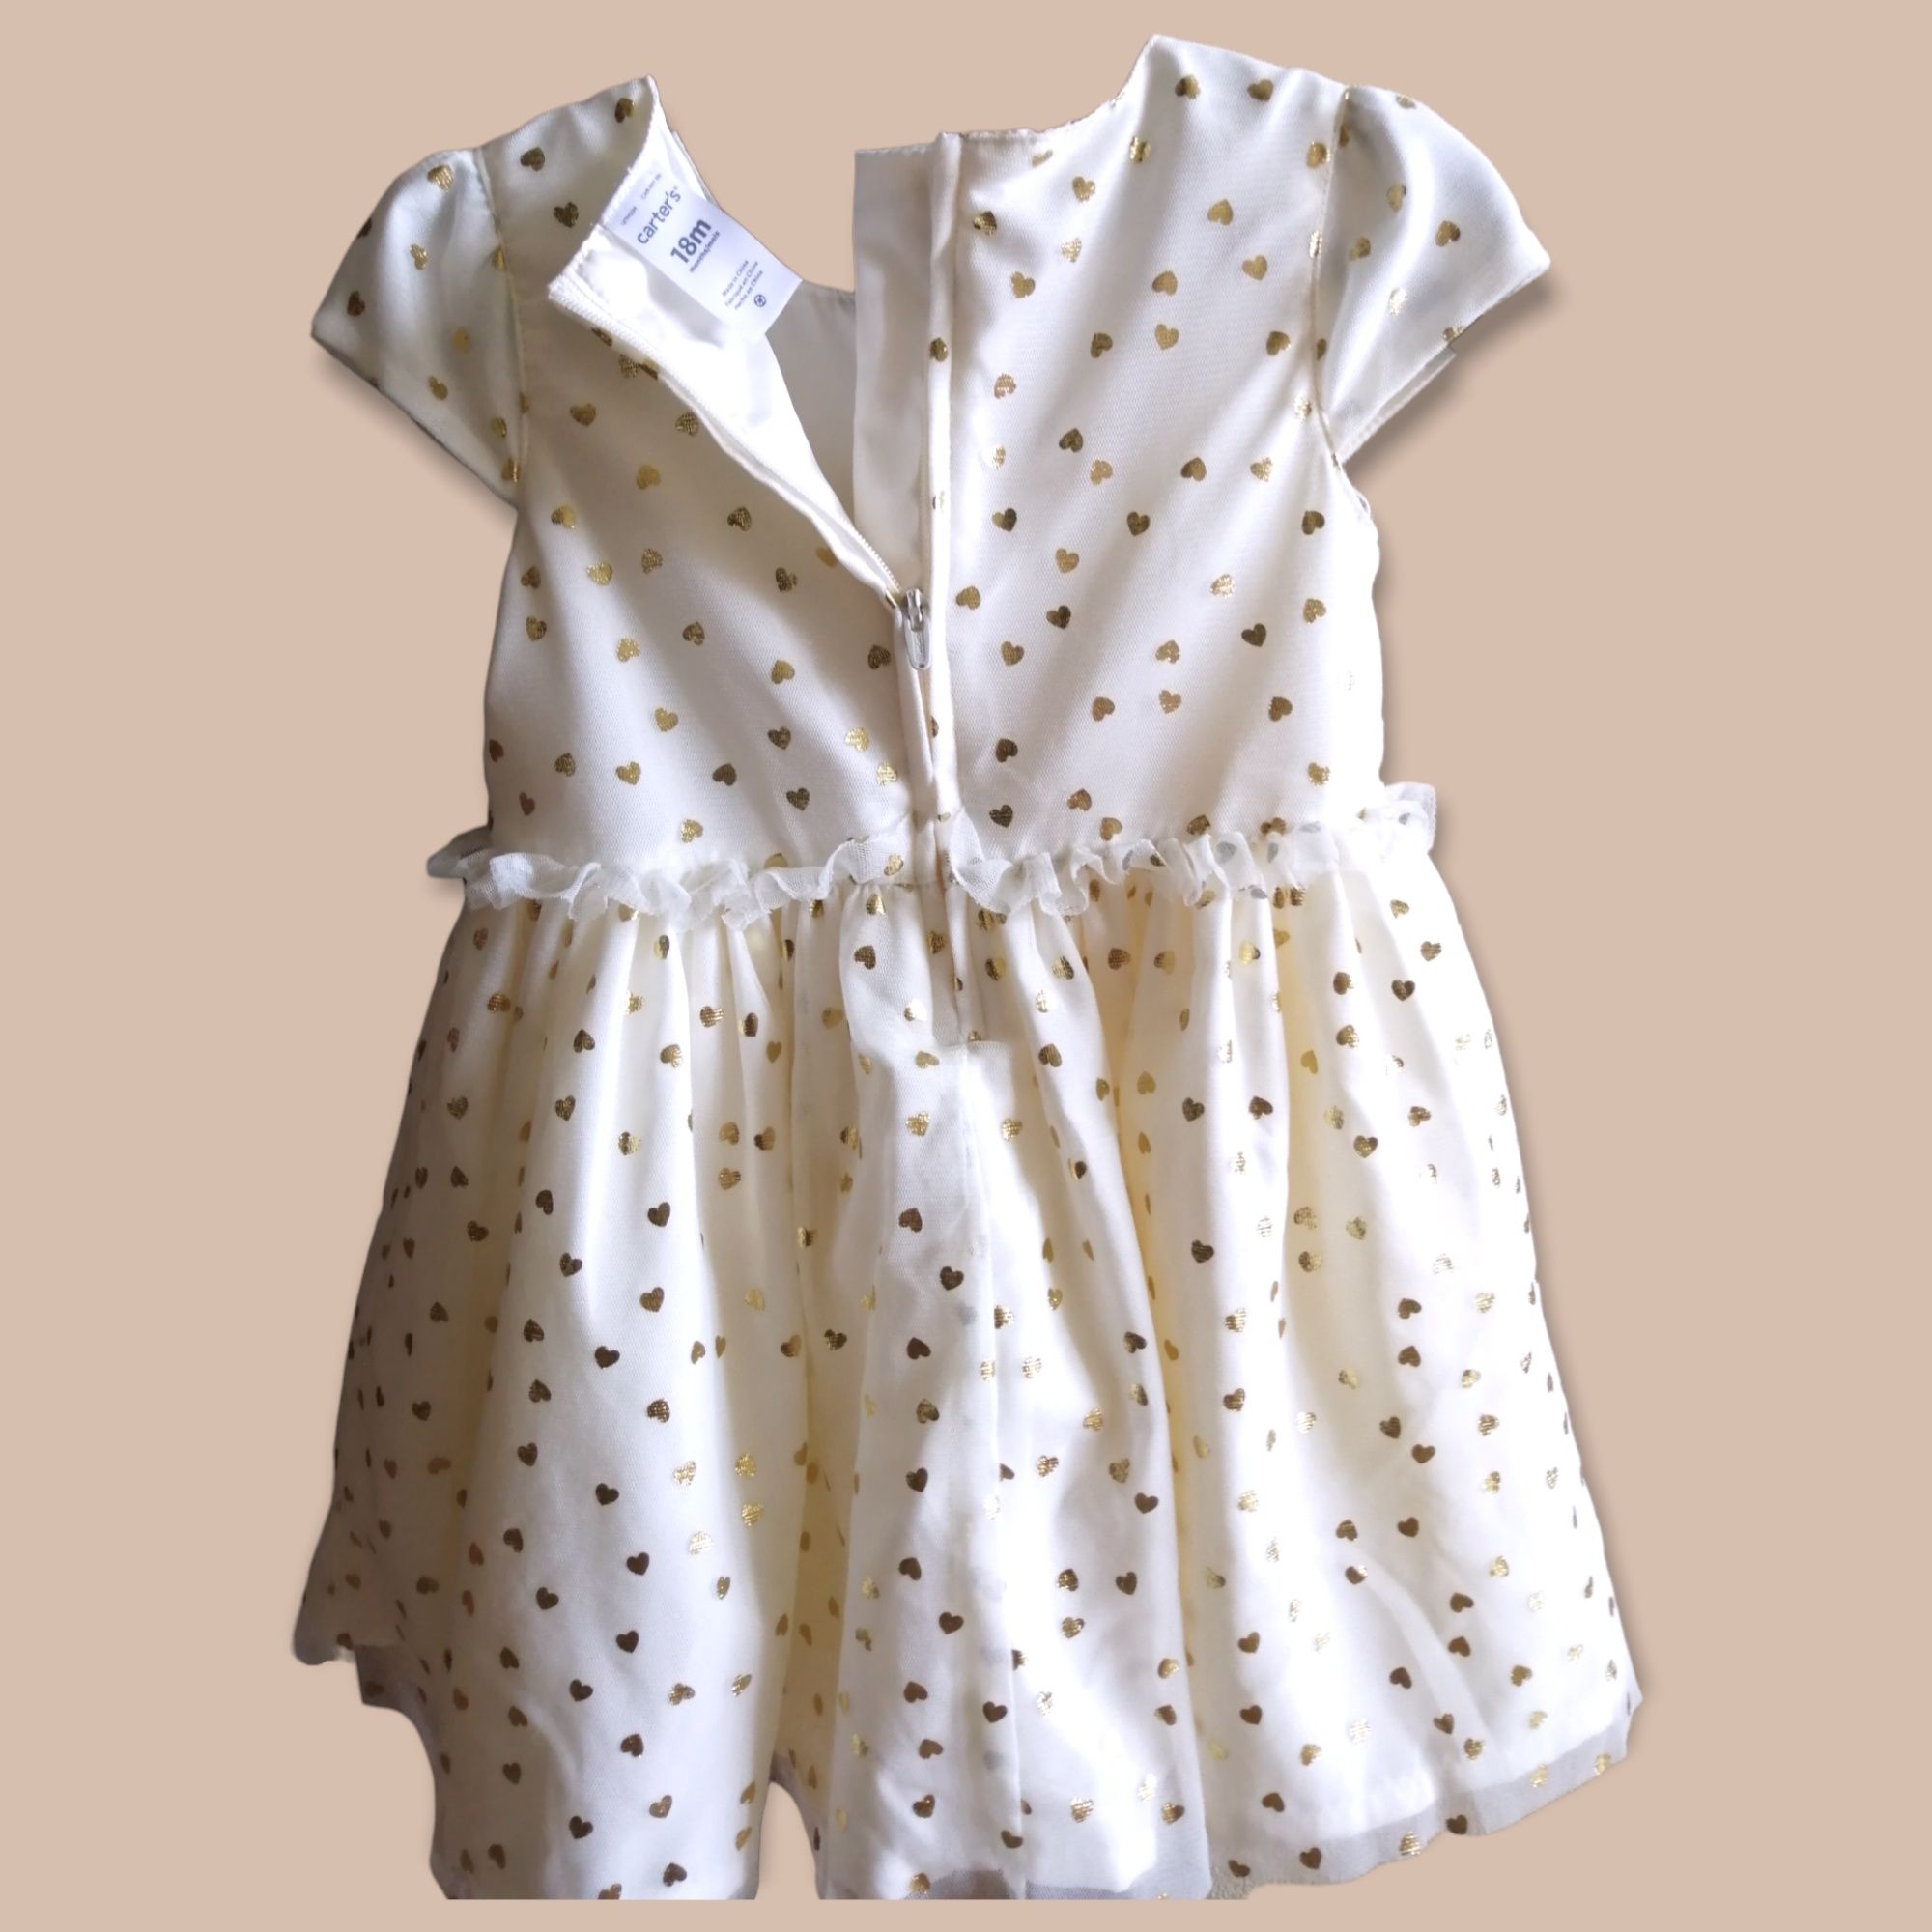 Плаття Carters колір айворі з золотими сердечками 18 місяців